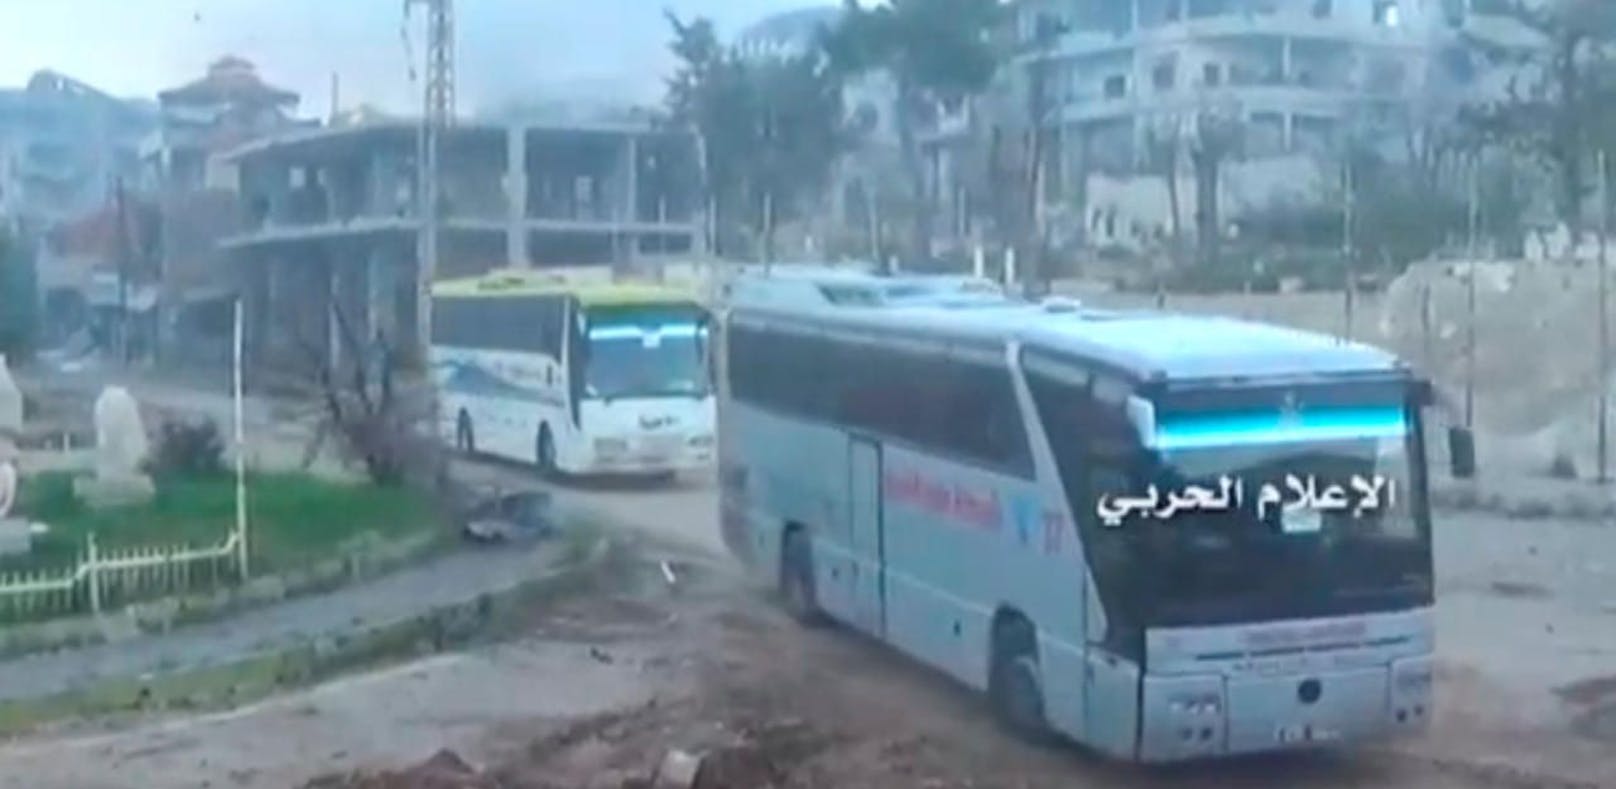 Syrische Rebellenkämpfer räumen Damaskus